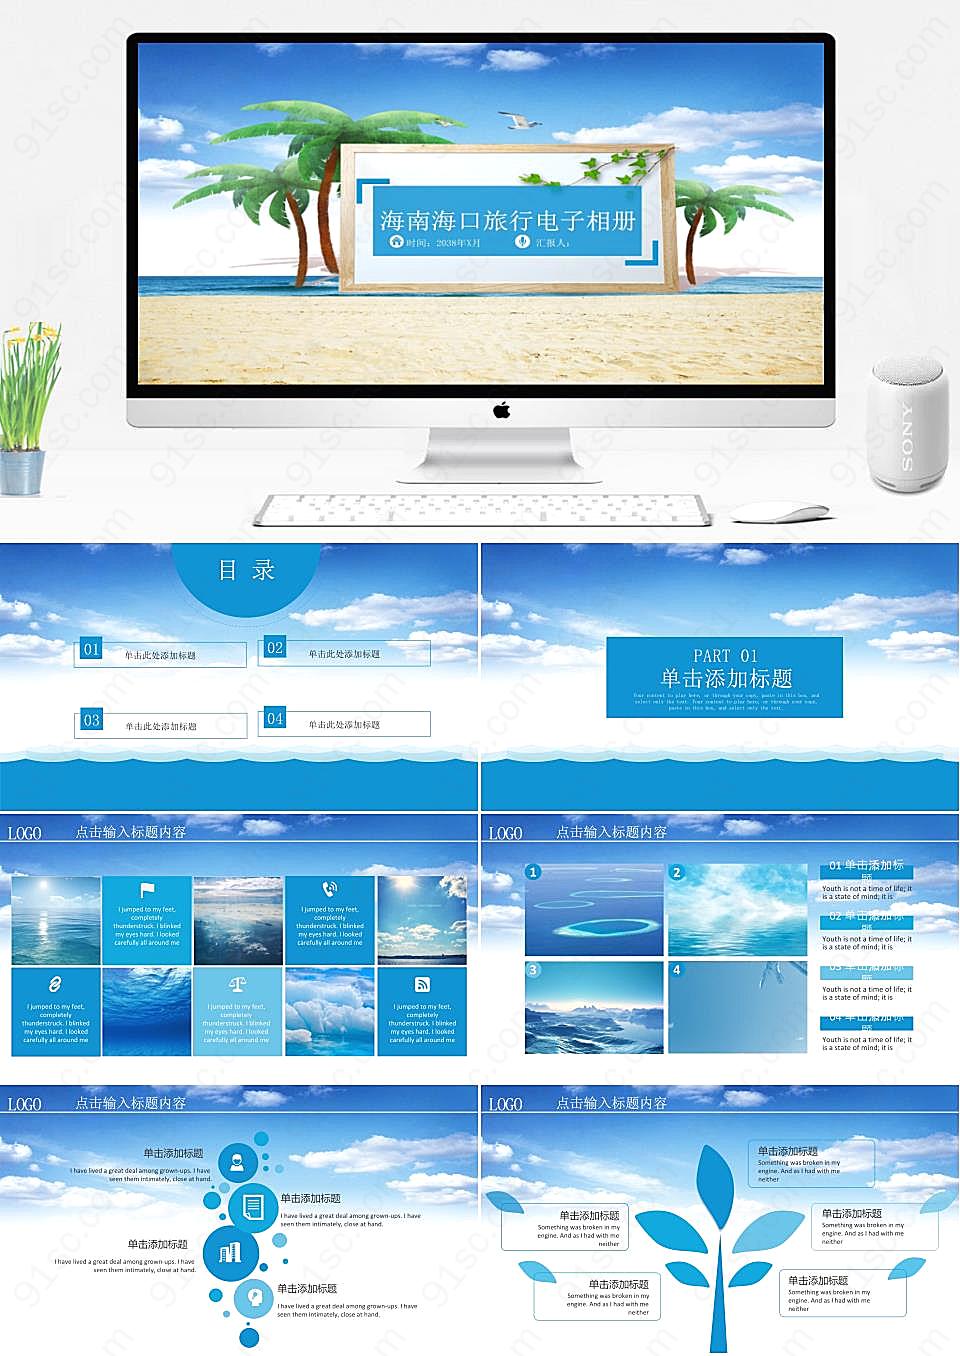 探索海南海口创意旅行电子相册展示PPT模板旅游旅行下载